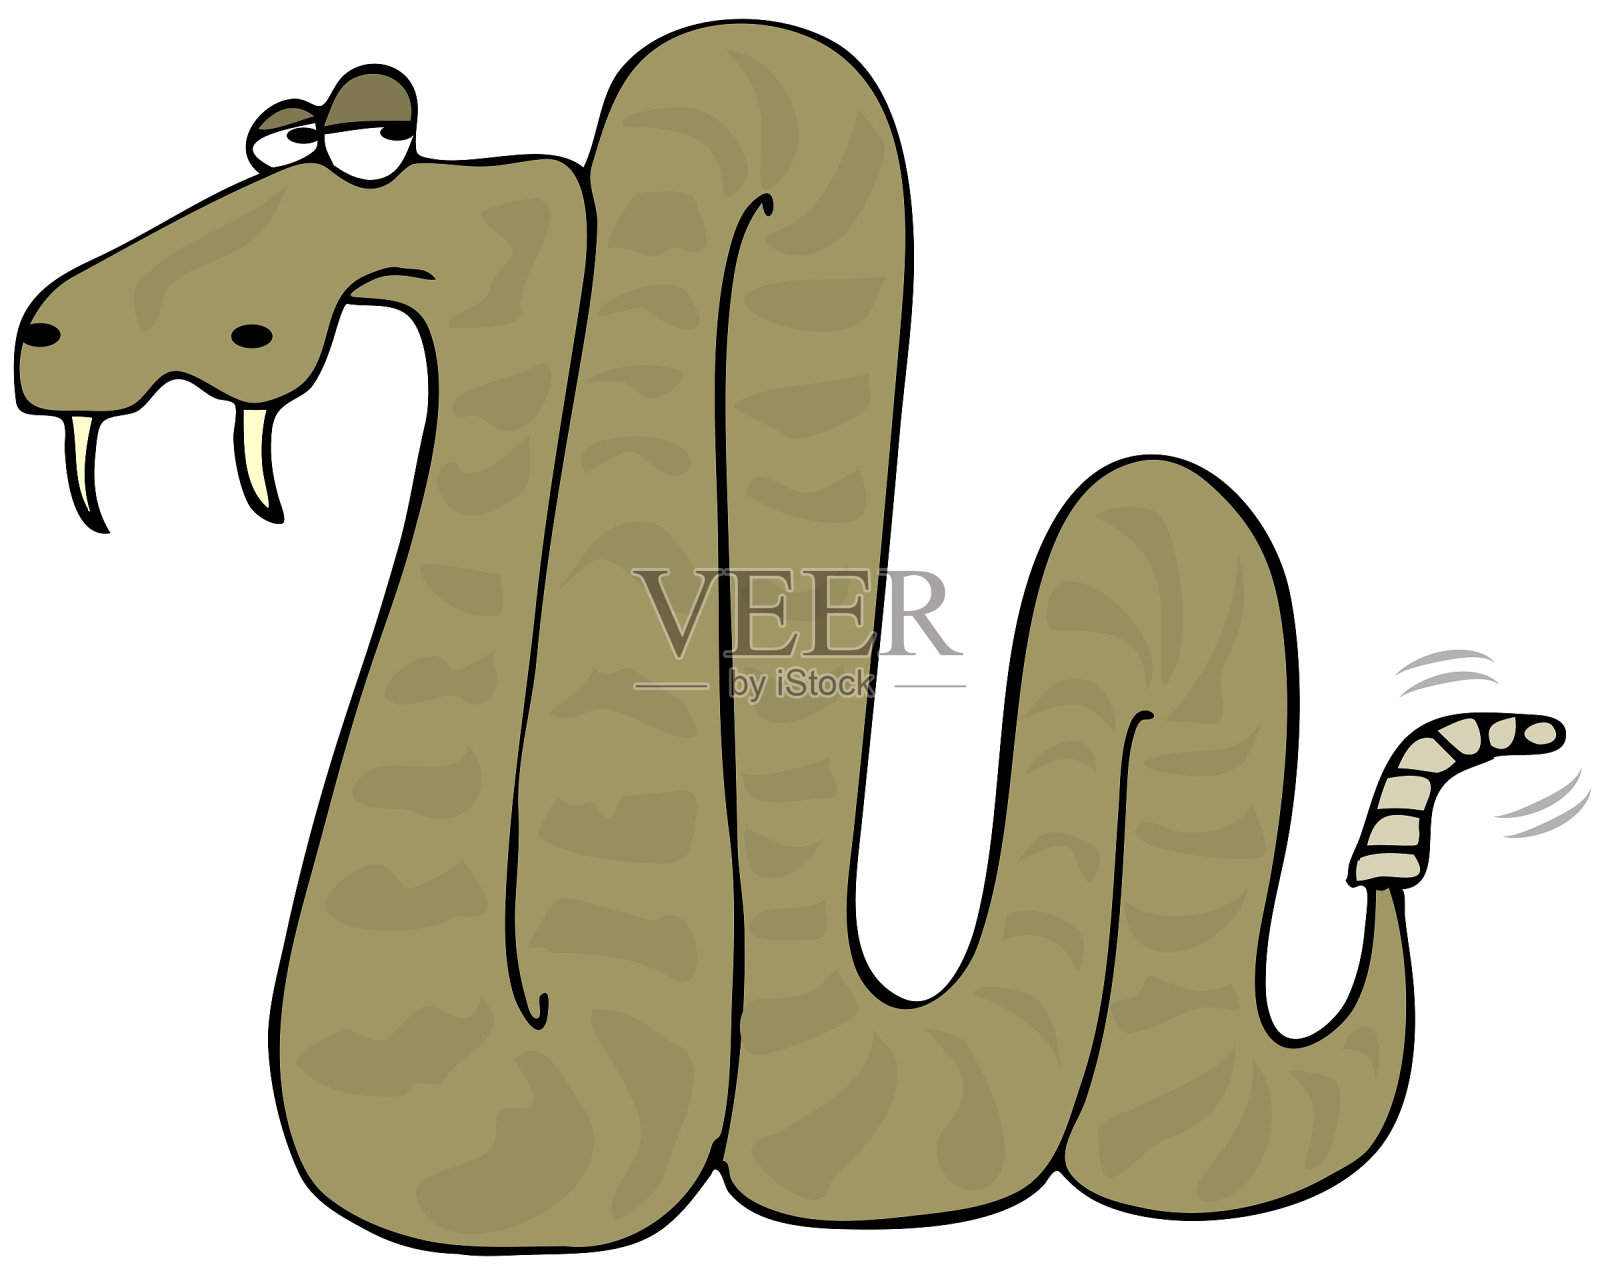 响尾蛇设计元素图片